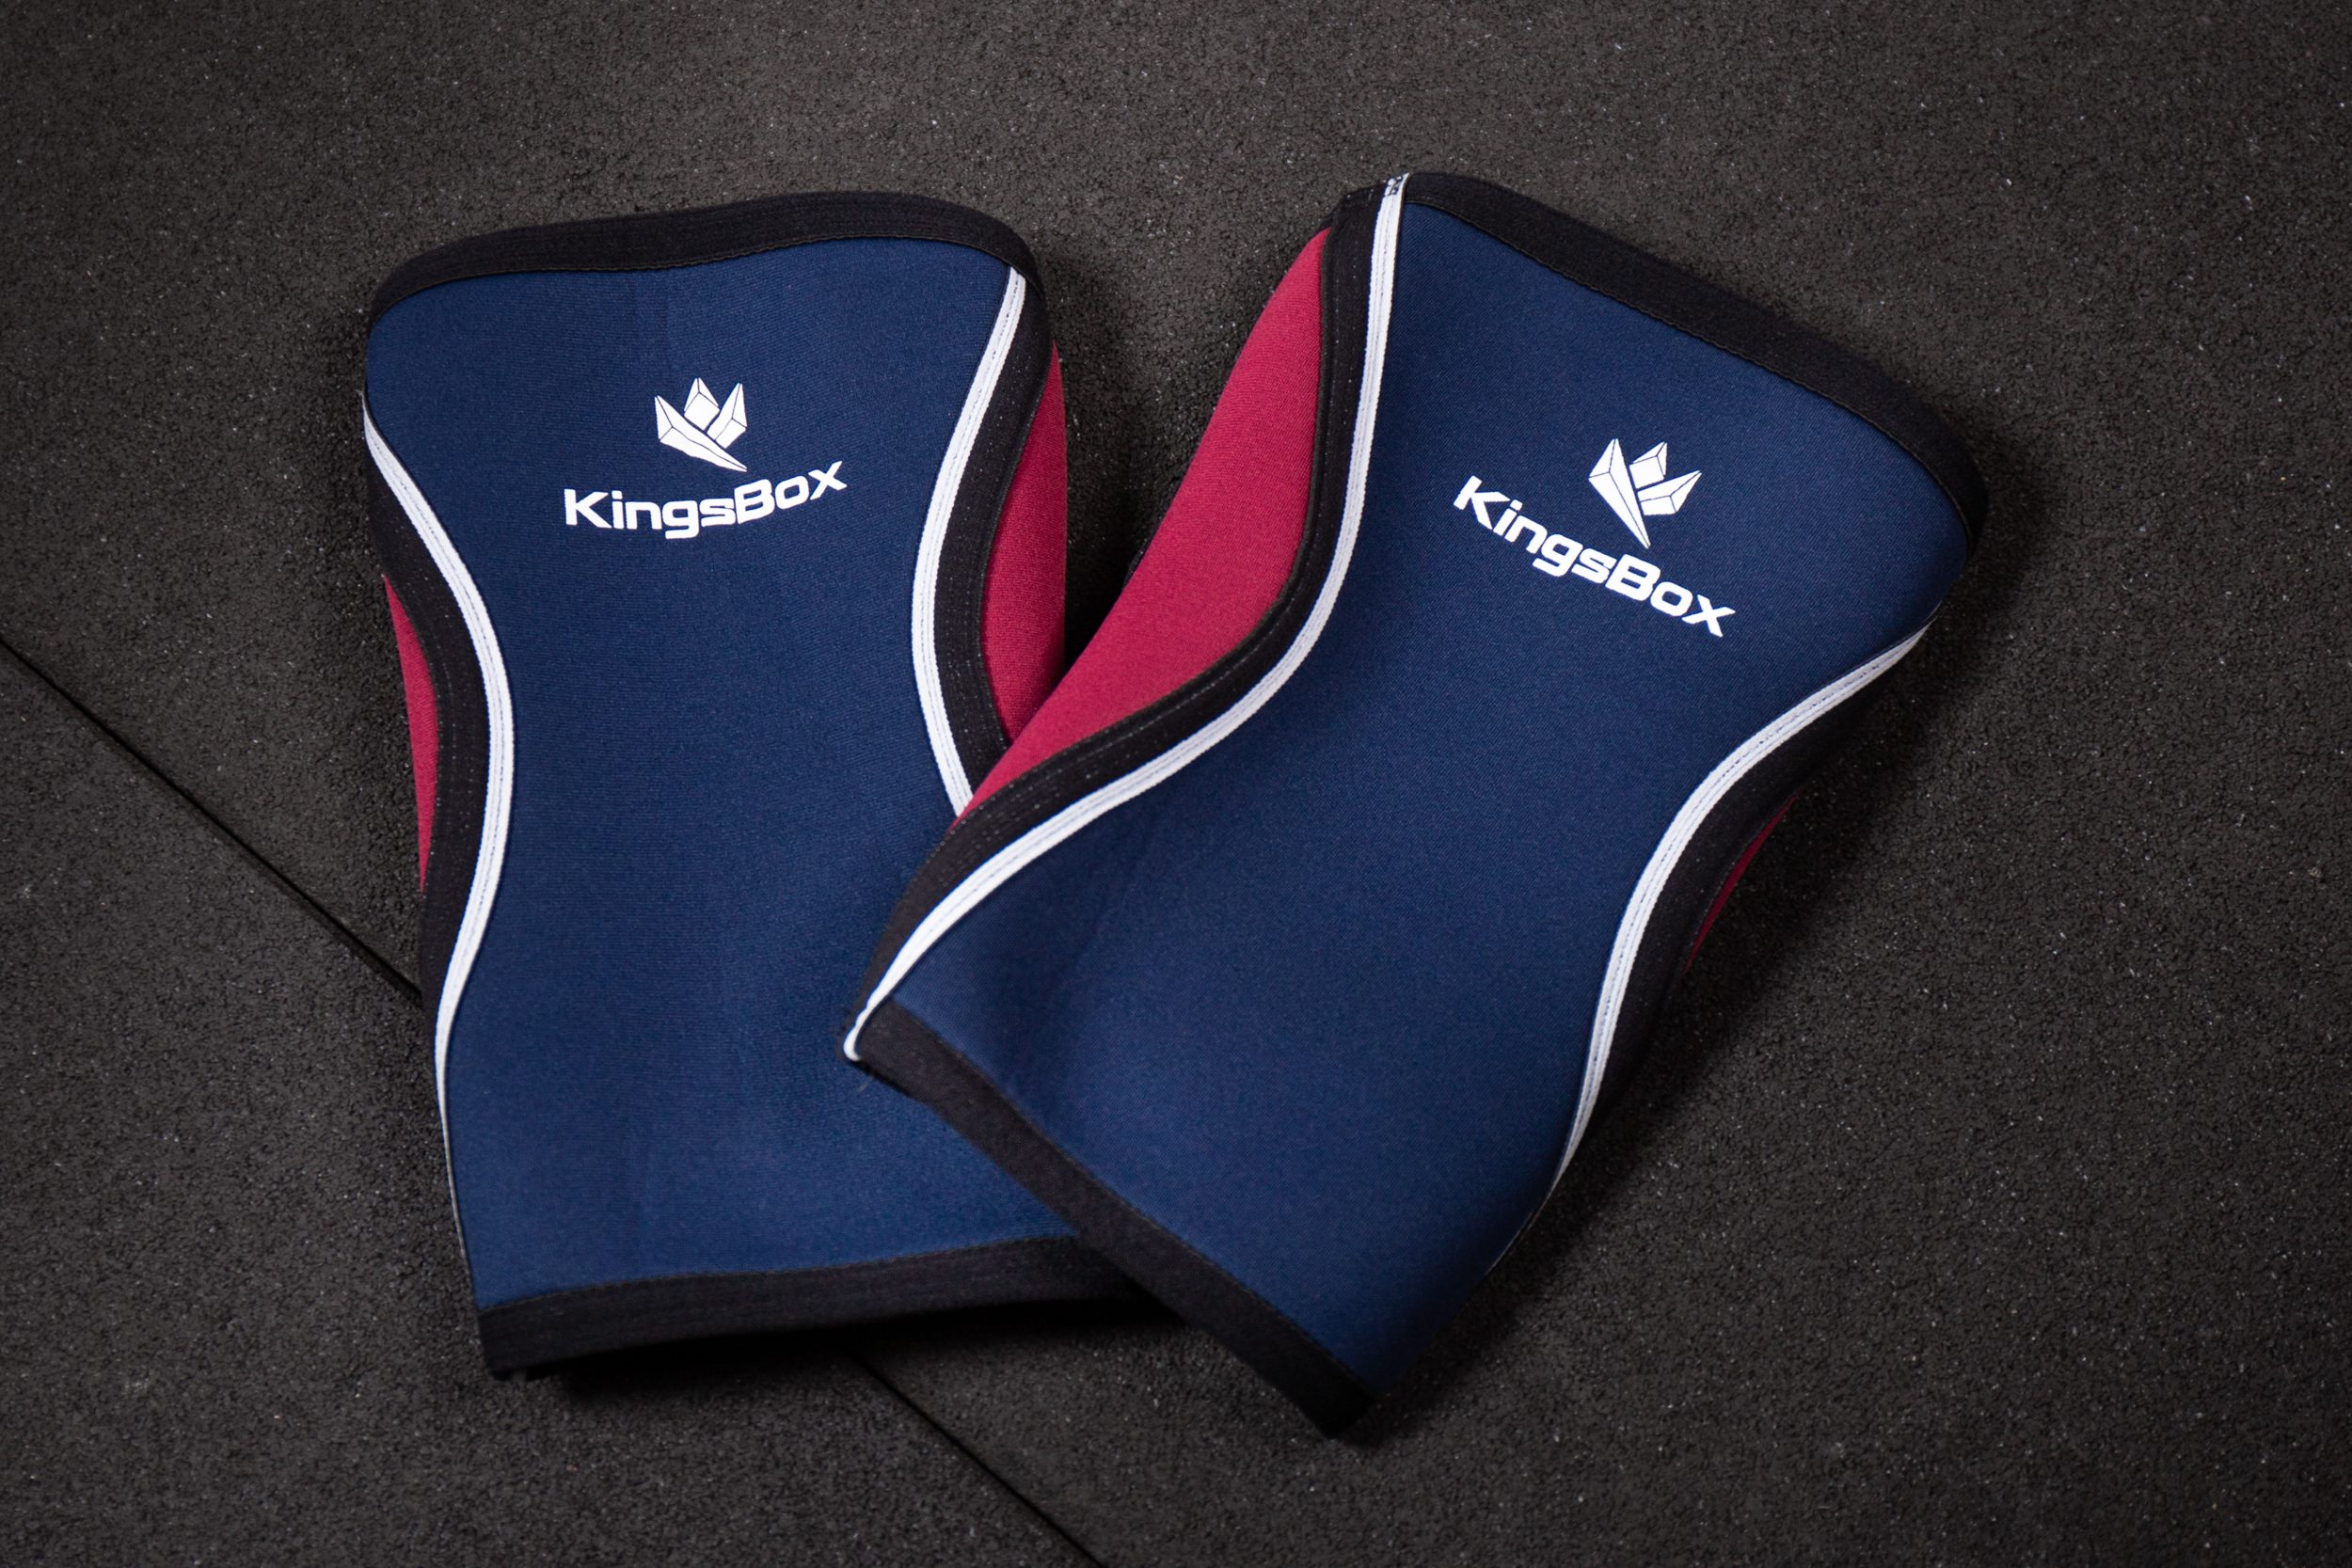 Used - KingsBox Knee Sleeves (Blue/Red) - L